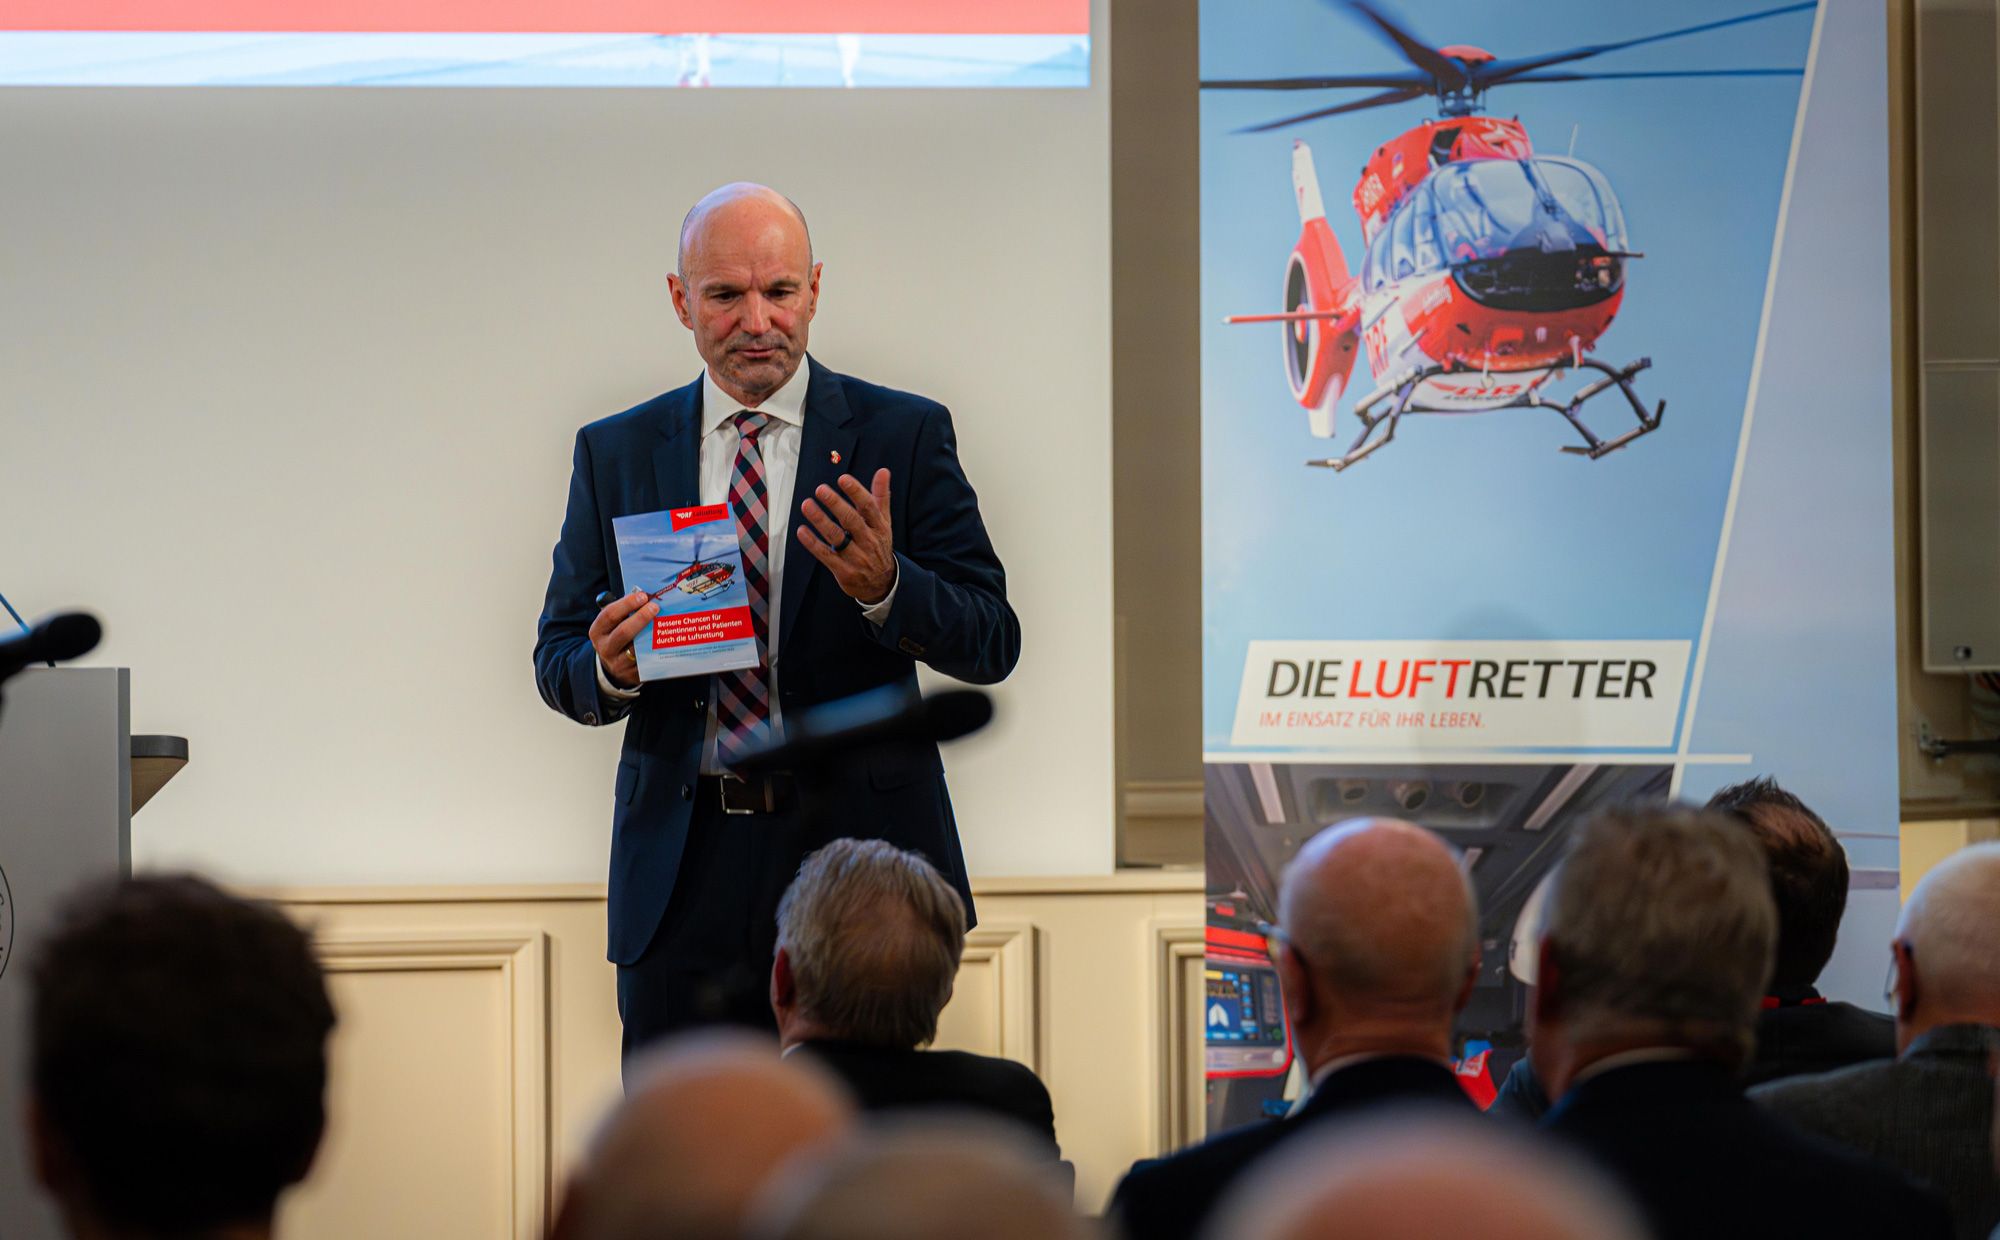 DRF Luftrettung fordert Verbesserungen in der Luftrettung // Positionspapier zur Reform des Rettungswesens vorgestellt